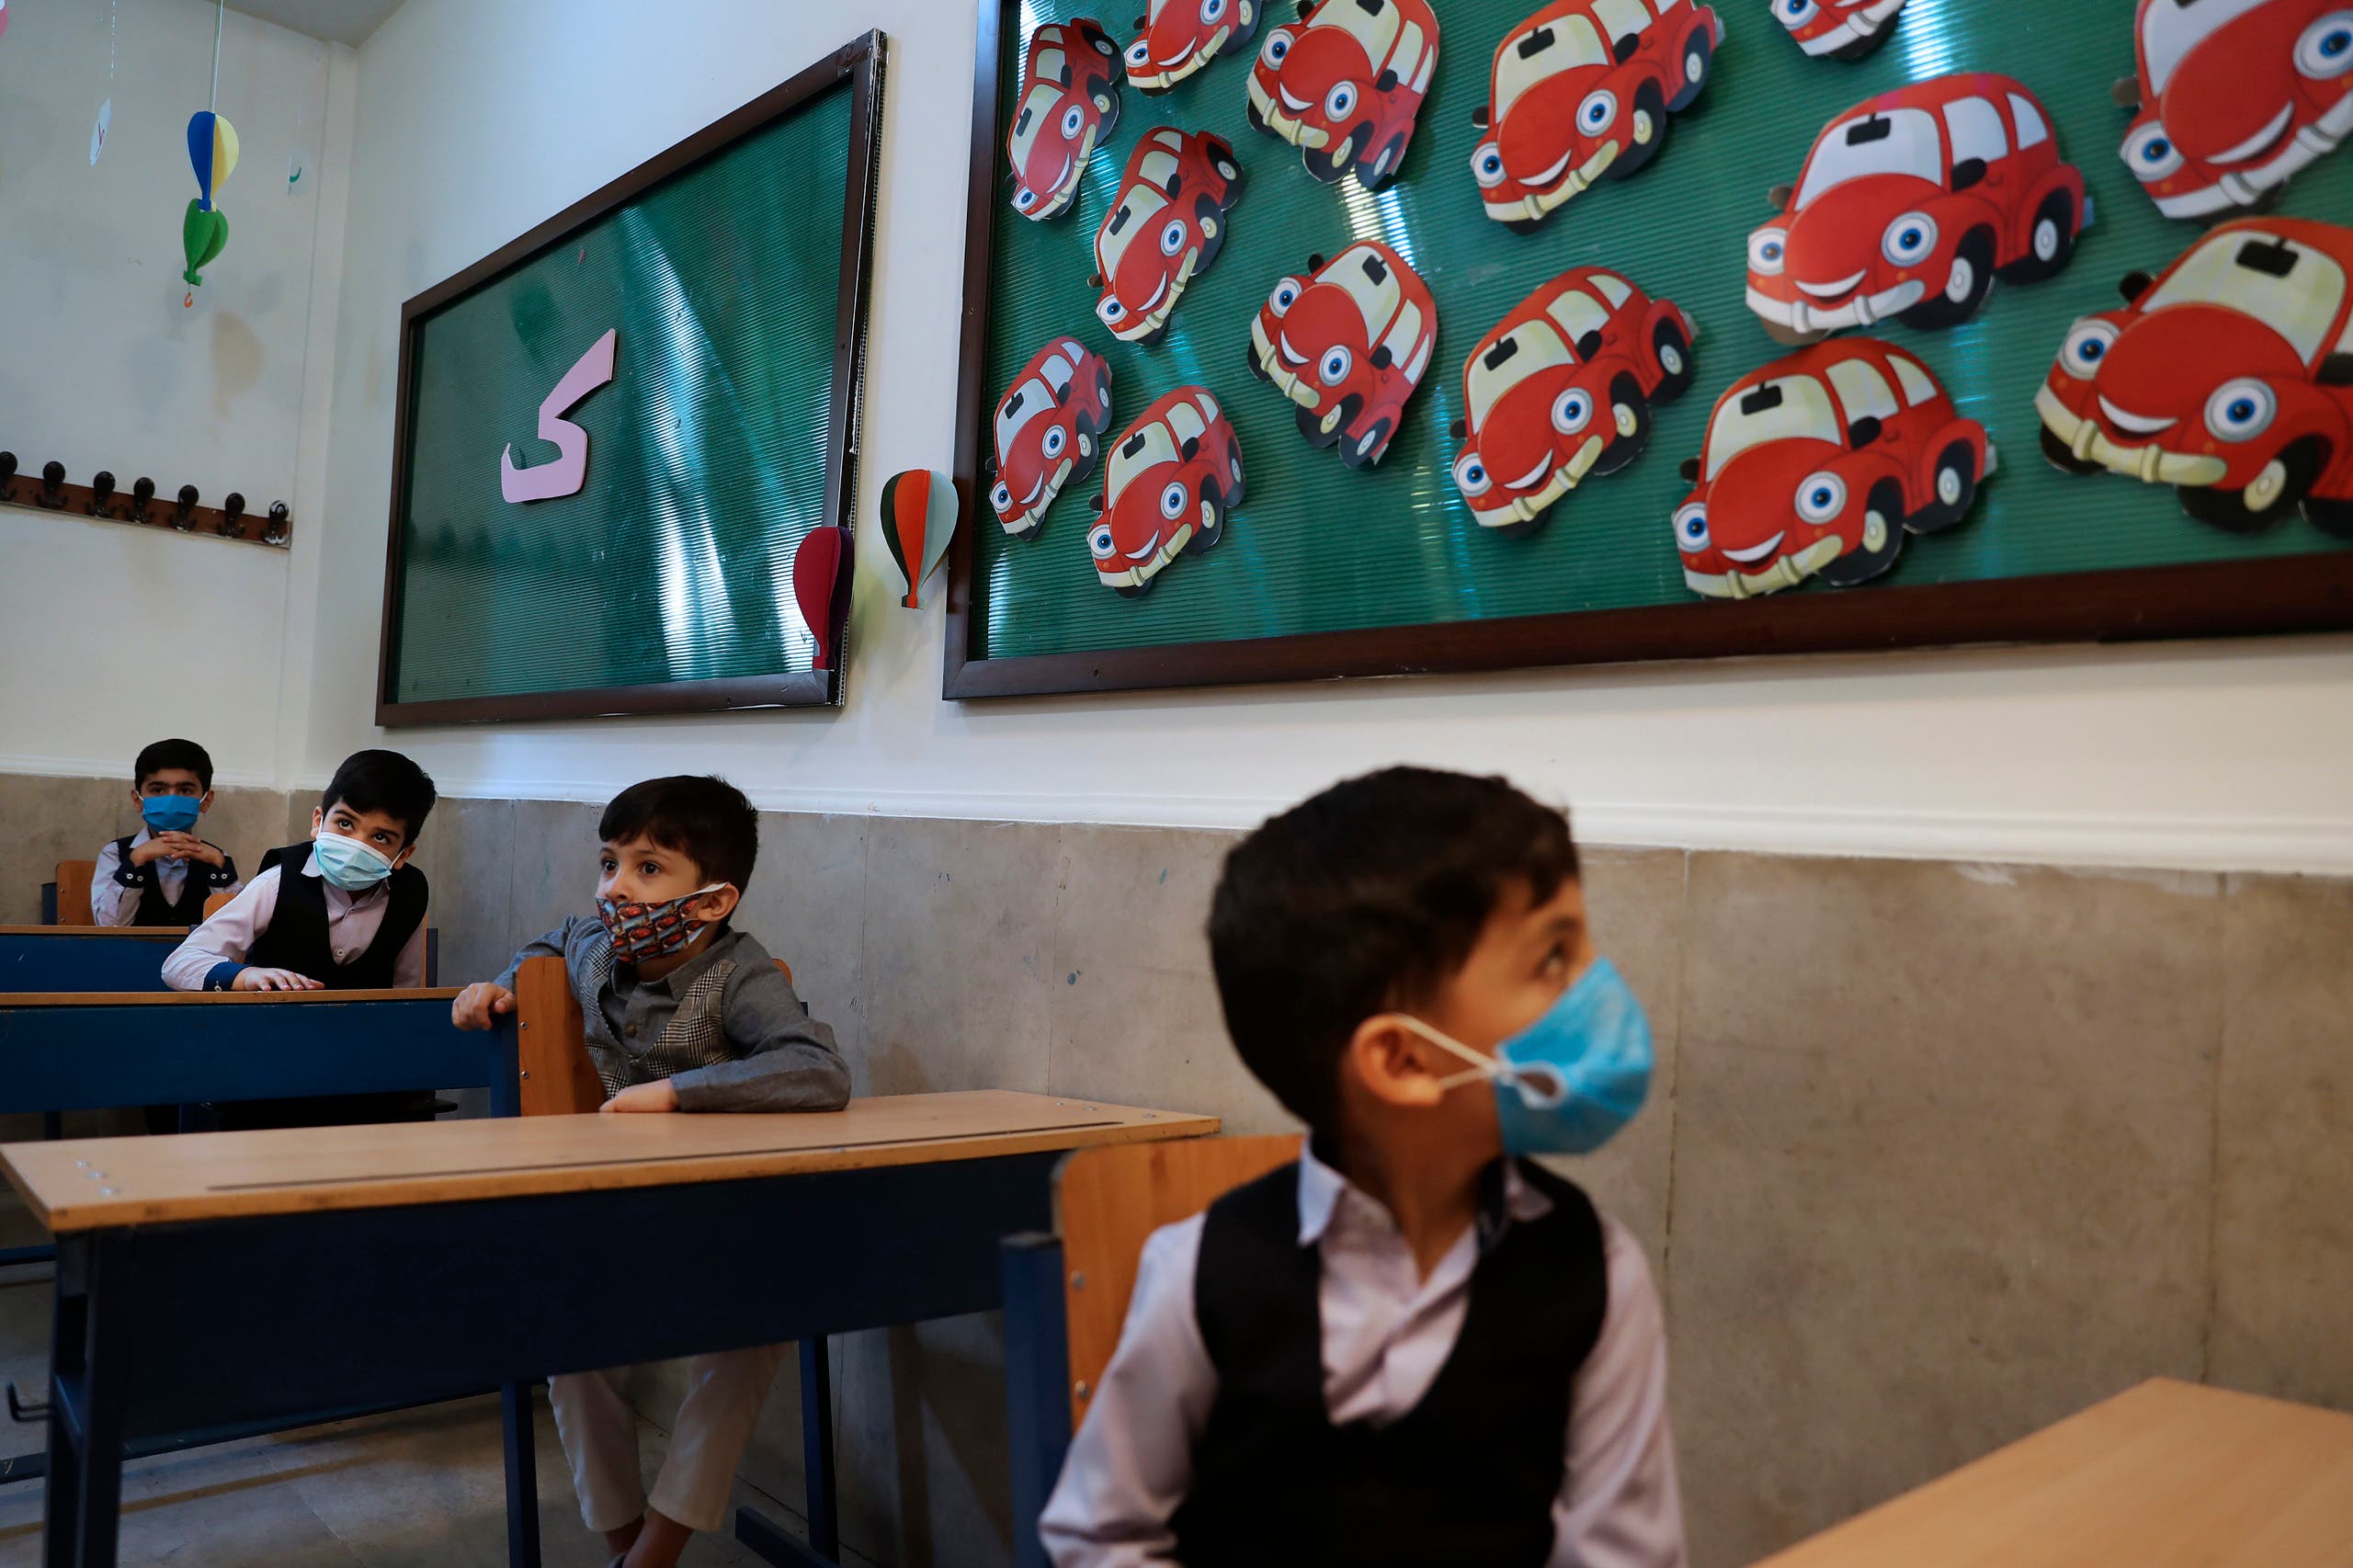 أطفال يرتدون كمامات للوقاية من كورونا في مدرسة بطهران